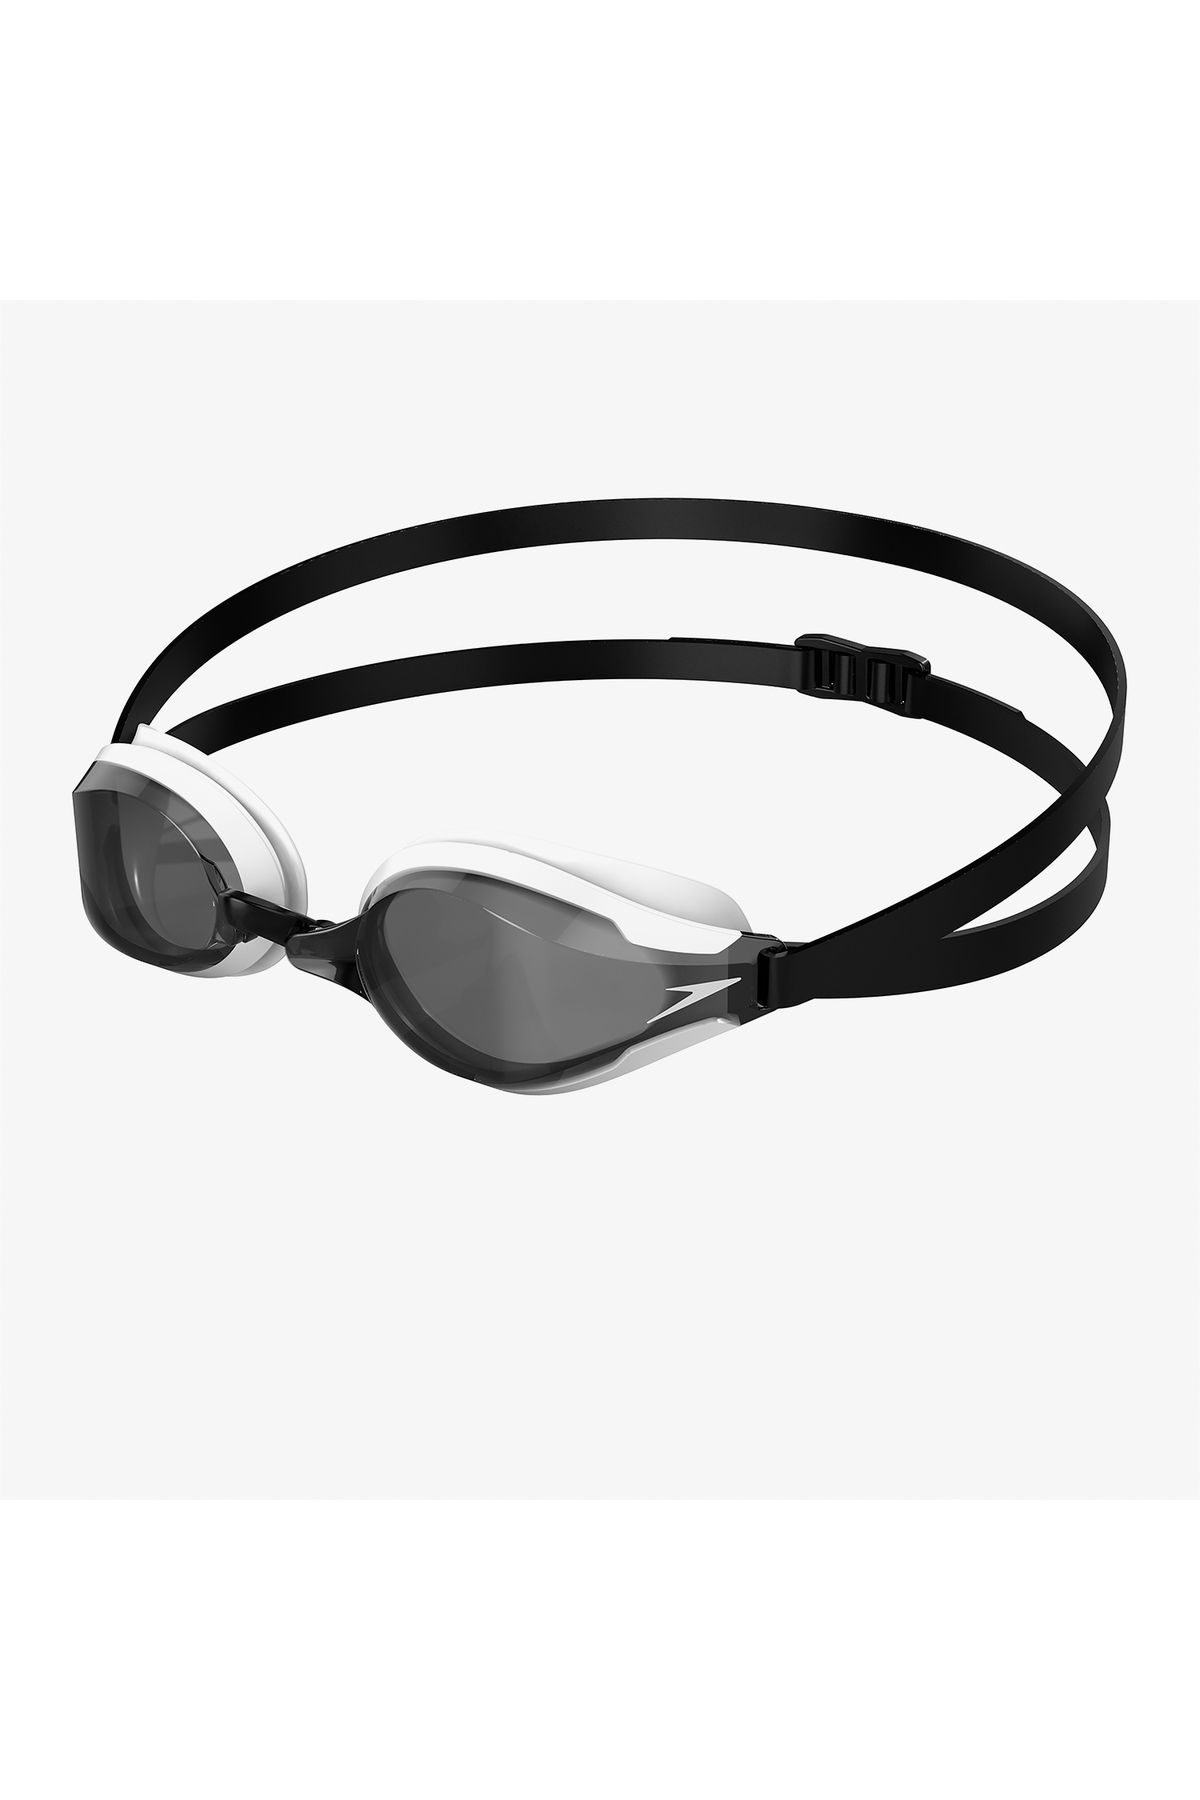 SPEEDO Fastskin Speedsocket 2 Unisex Siyah Yüzücü Gözlüğü